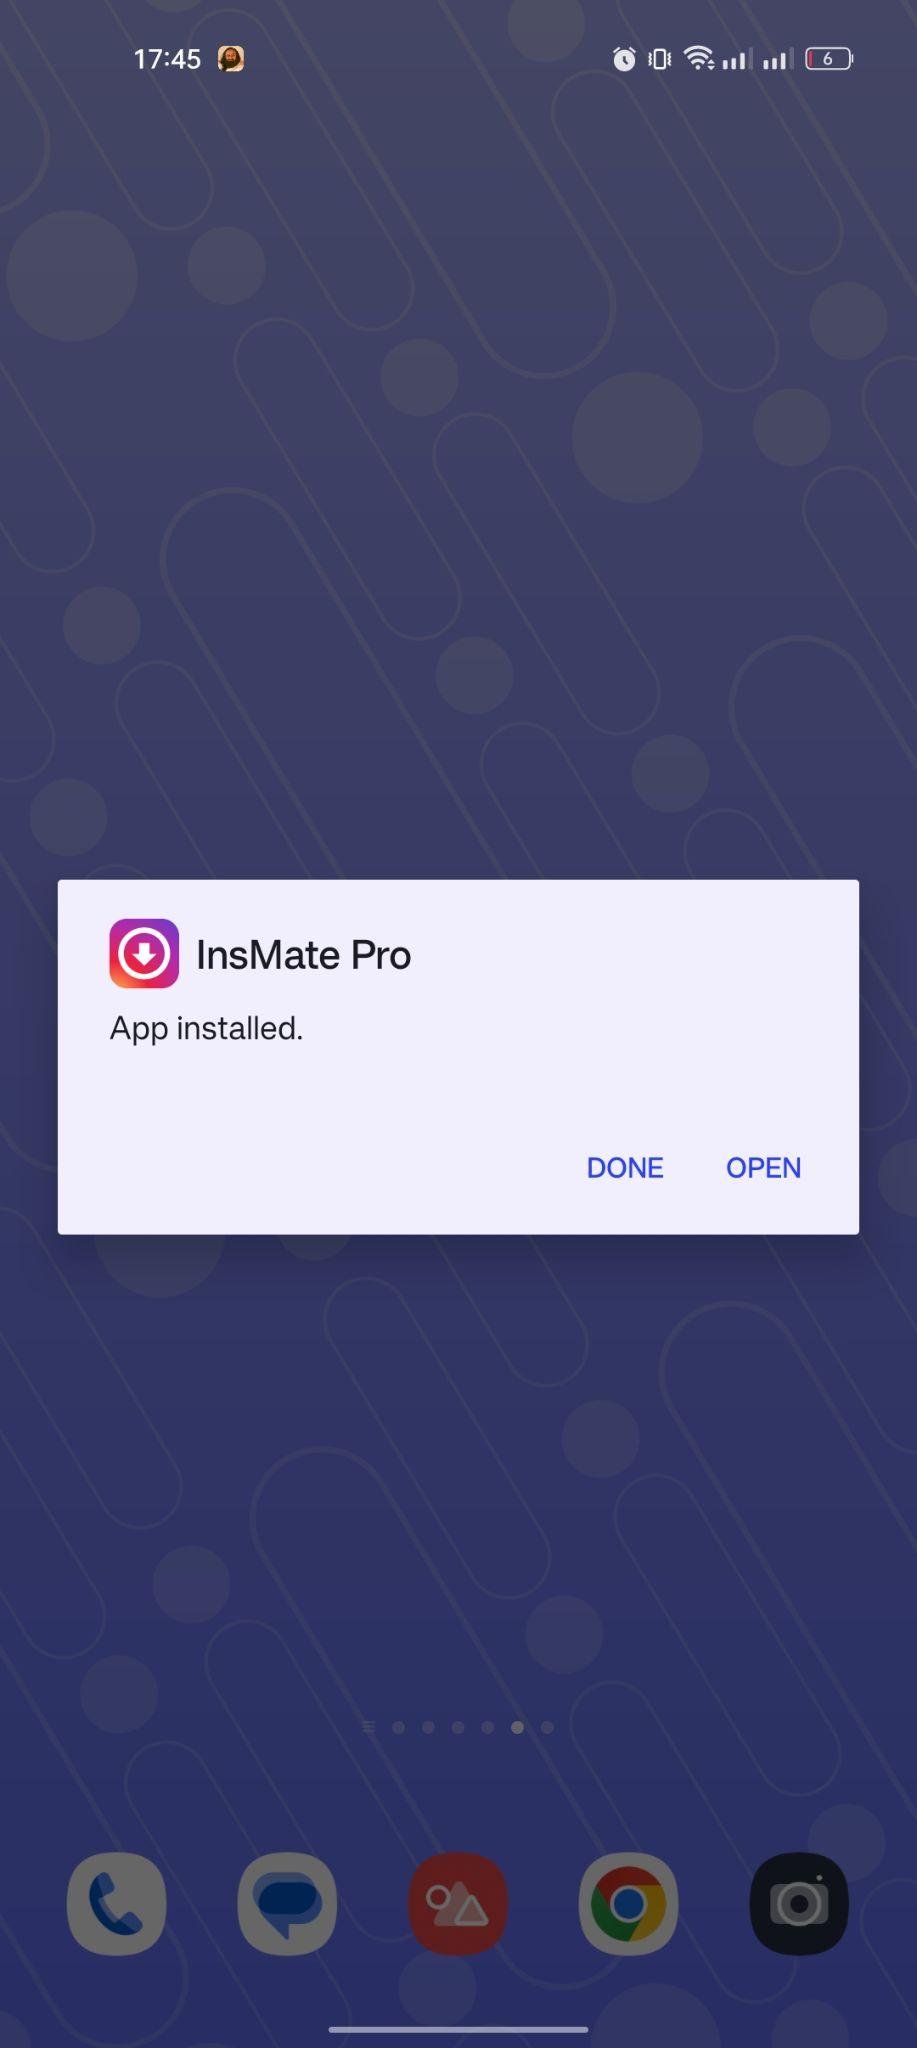 InsMate Pro apk installed